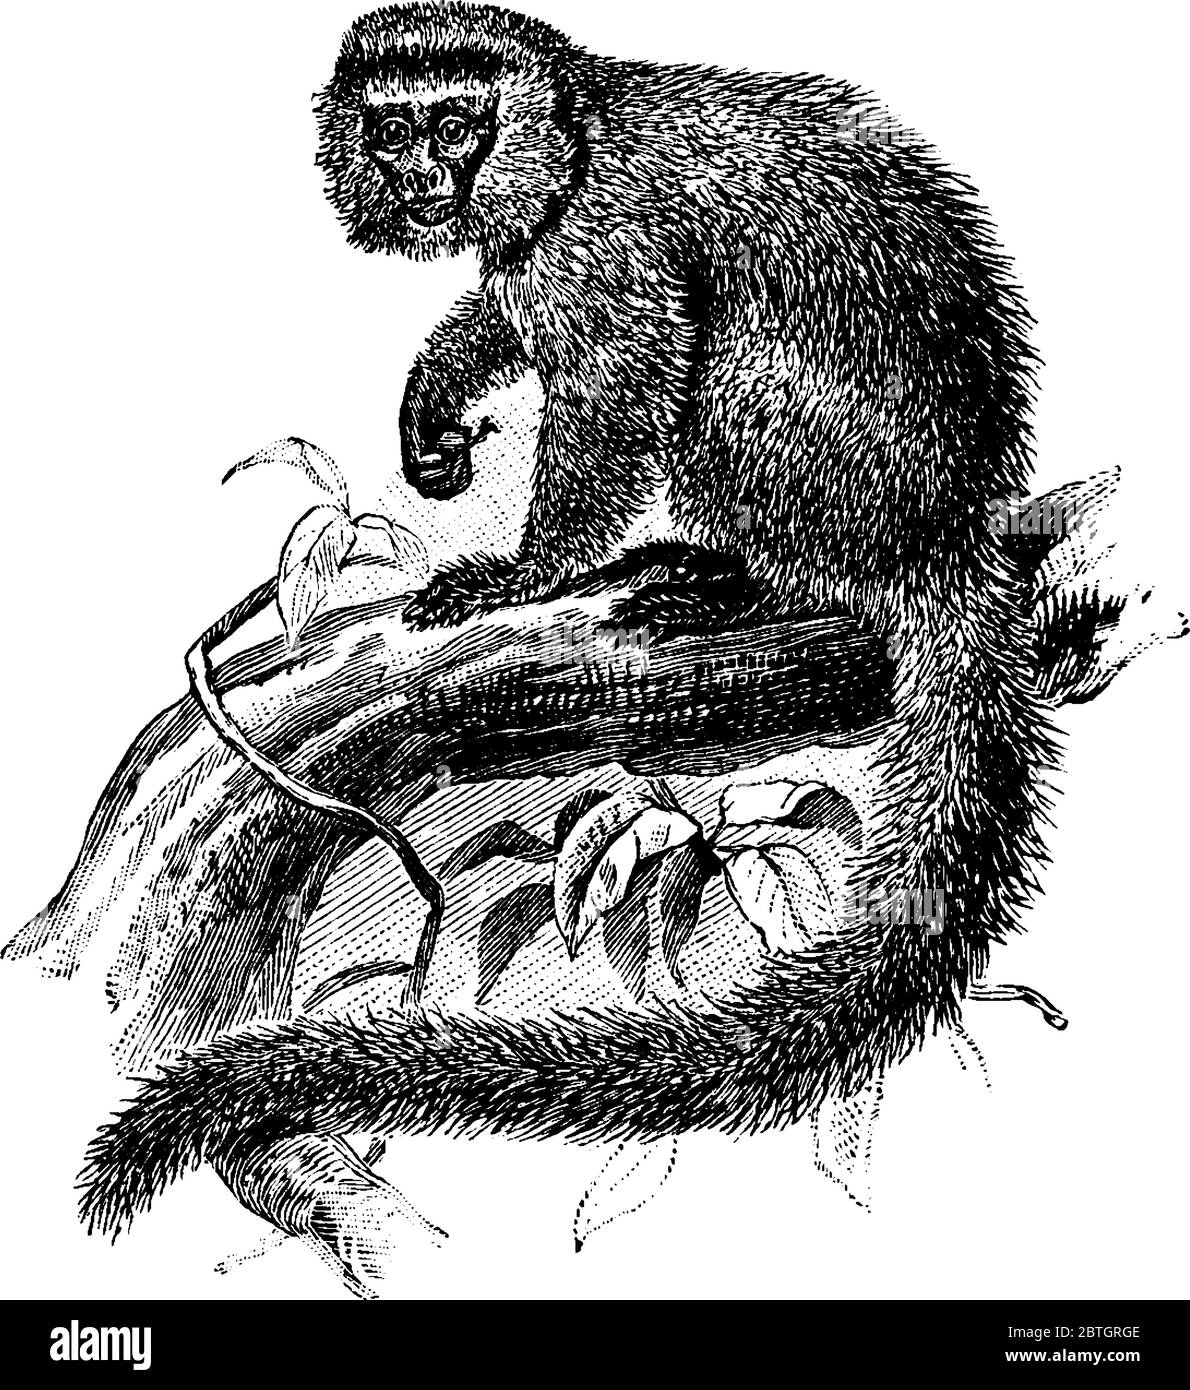 Murmeltier, ein südamerikanischer Affe, der auf den Ästen des Baumes sitzt, hat keine Weisheitszähne und hat Krallen und taktile Haare an den Handgelenken., Vintage-Linie d Stock Vektor